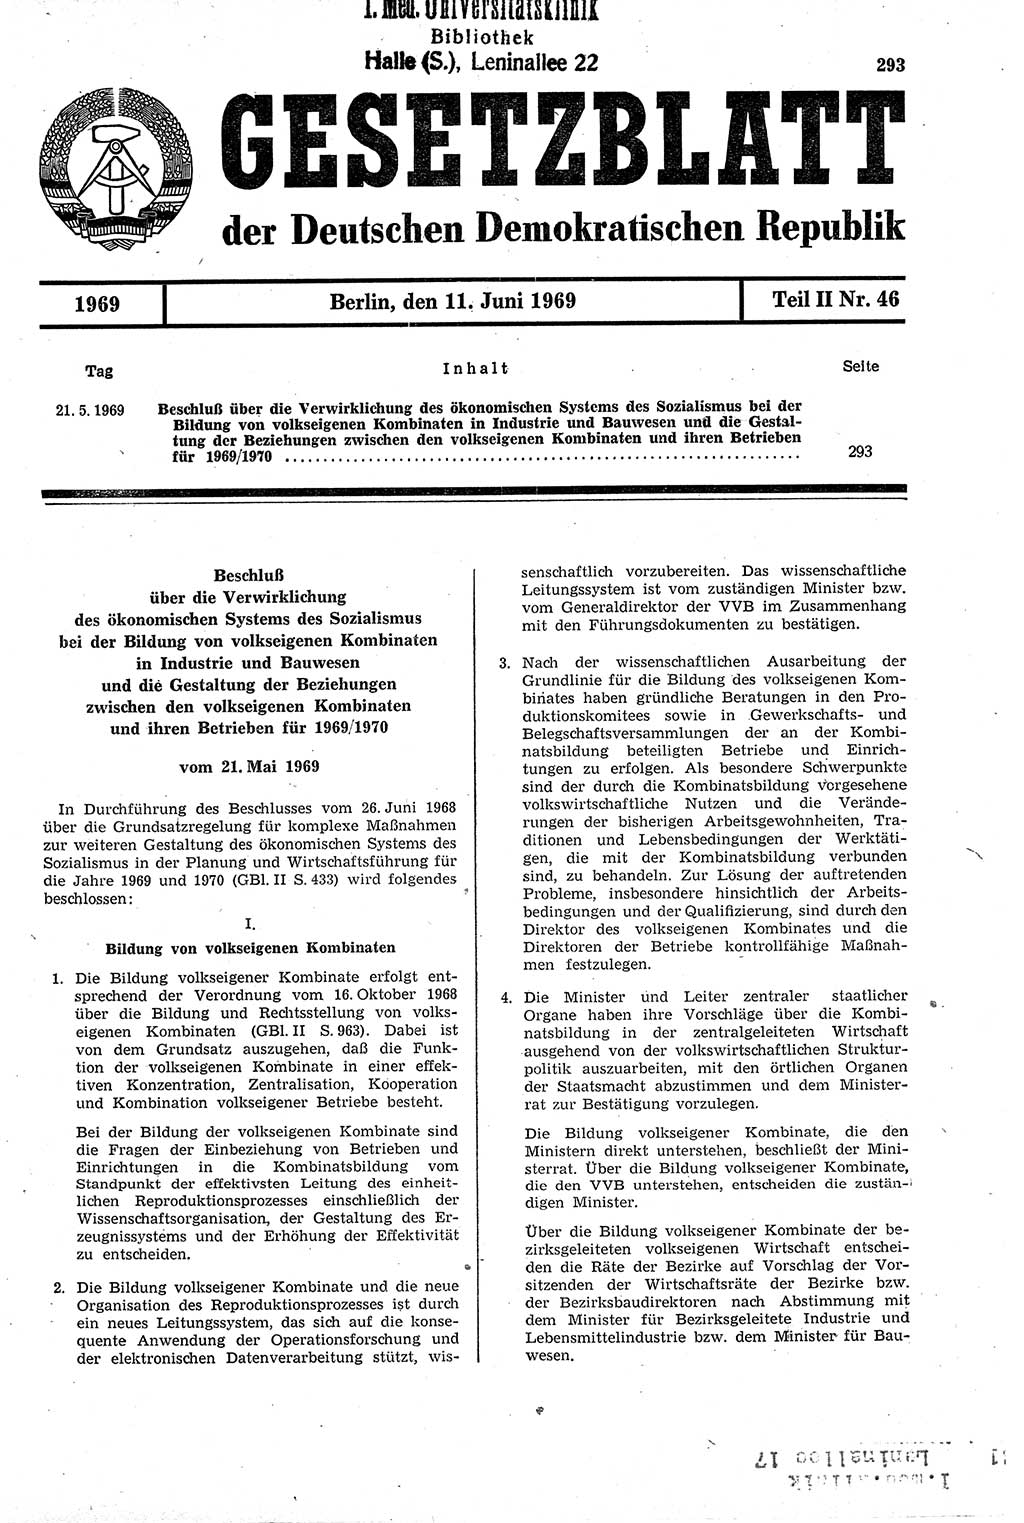 Gesetzblatt (GBl.) der Deutschen Demokratischen Republik (DDR) Teil ⅠⅠ 1969, Seite 293 (GBl. DDR ⅠⅠ 1969, S. 293)